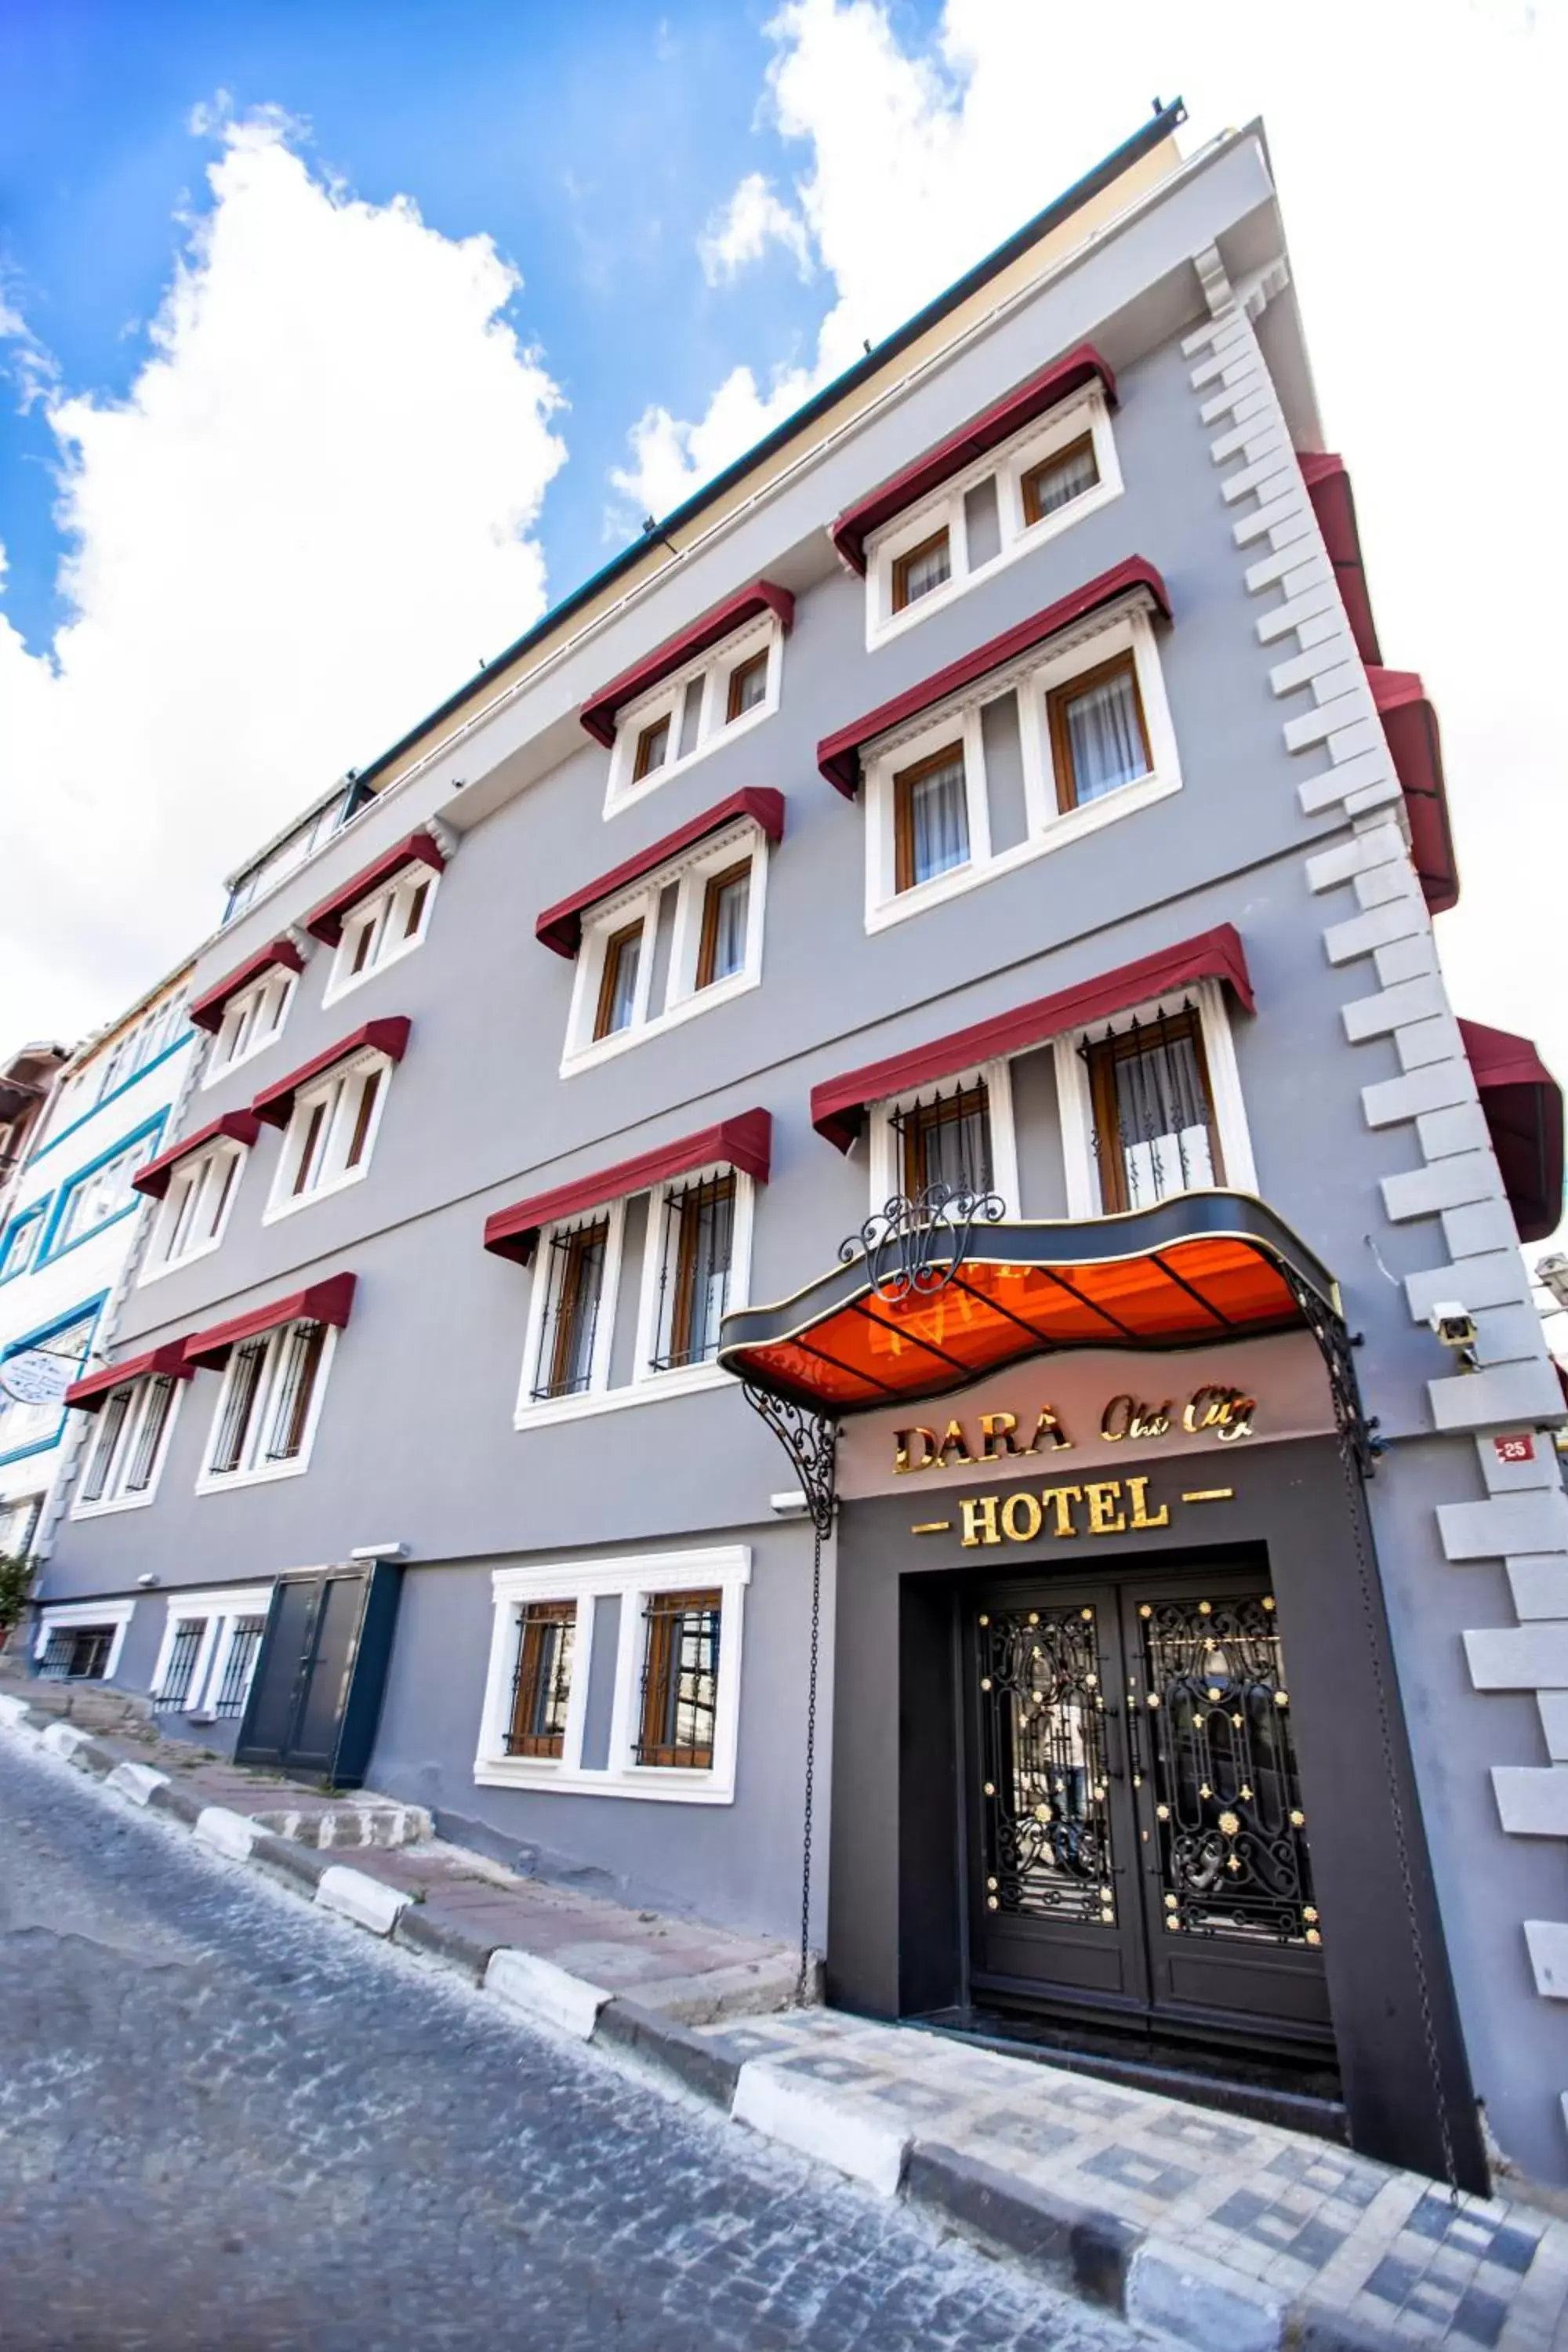 Facade/entrance, Property Building in Dara Old City Hotel